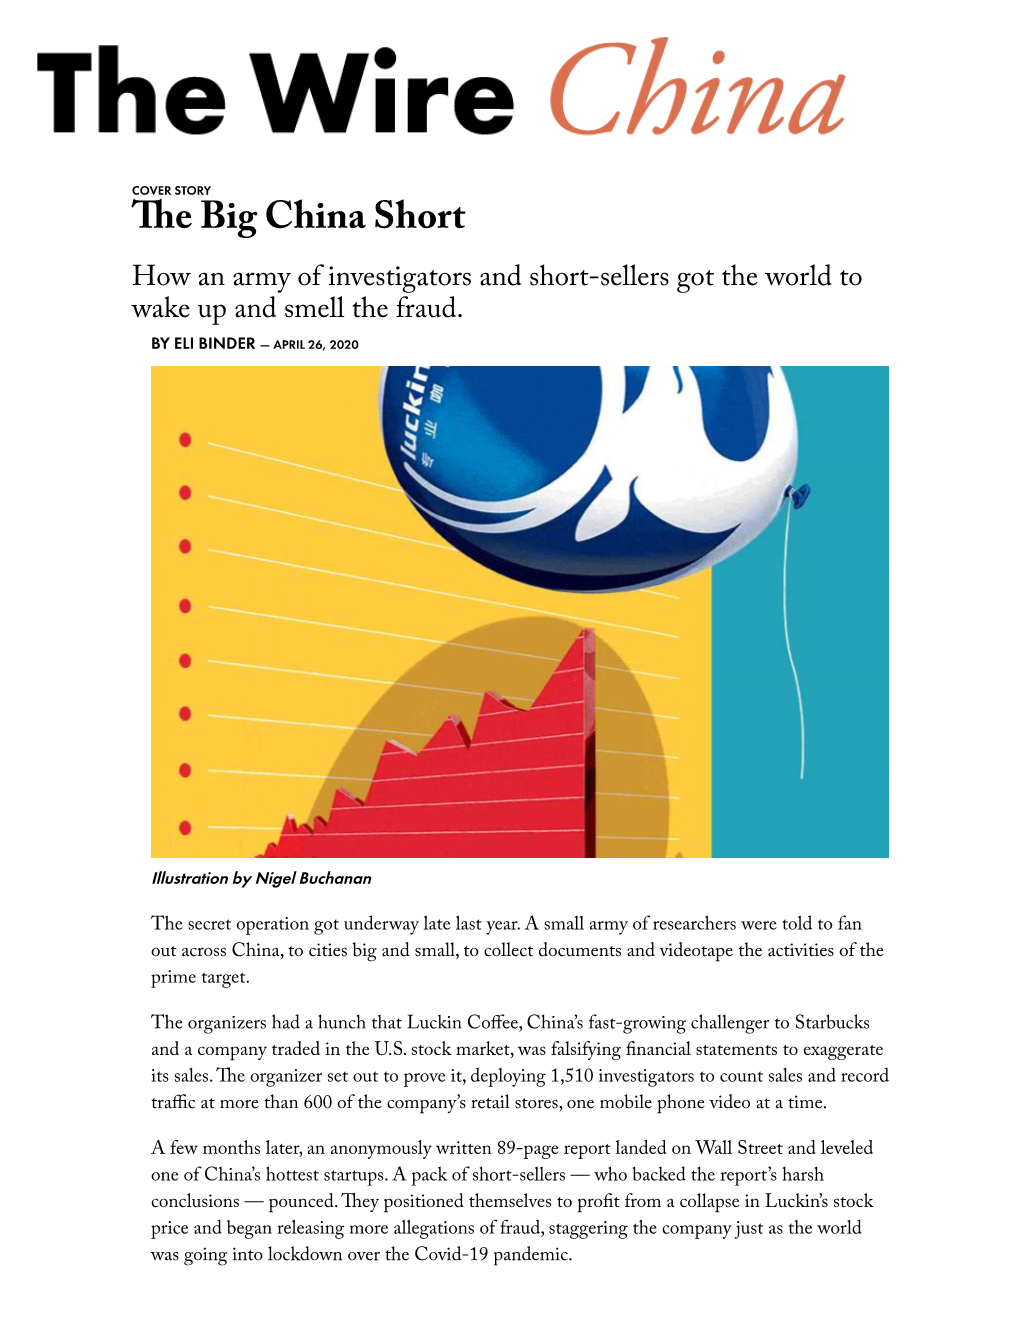 The Big China Short